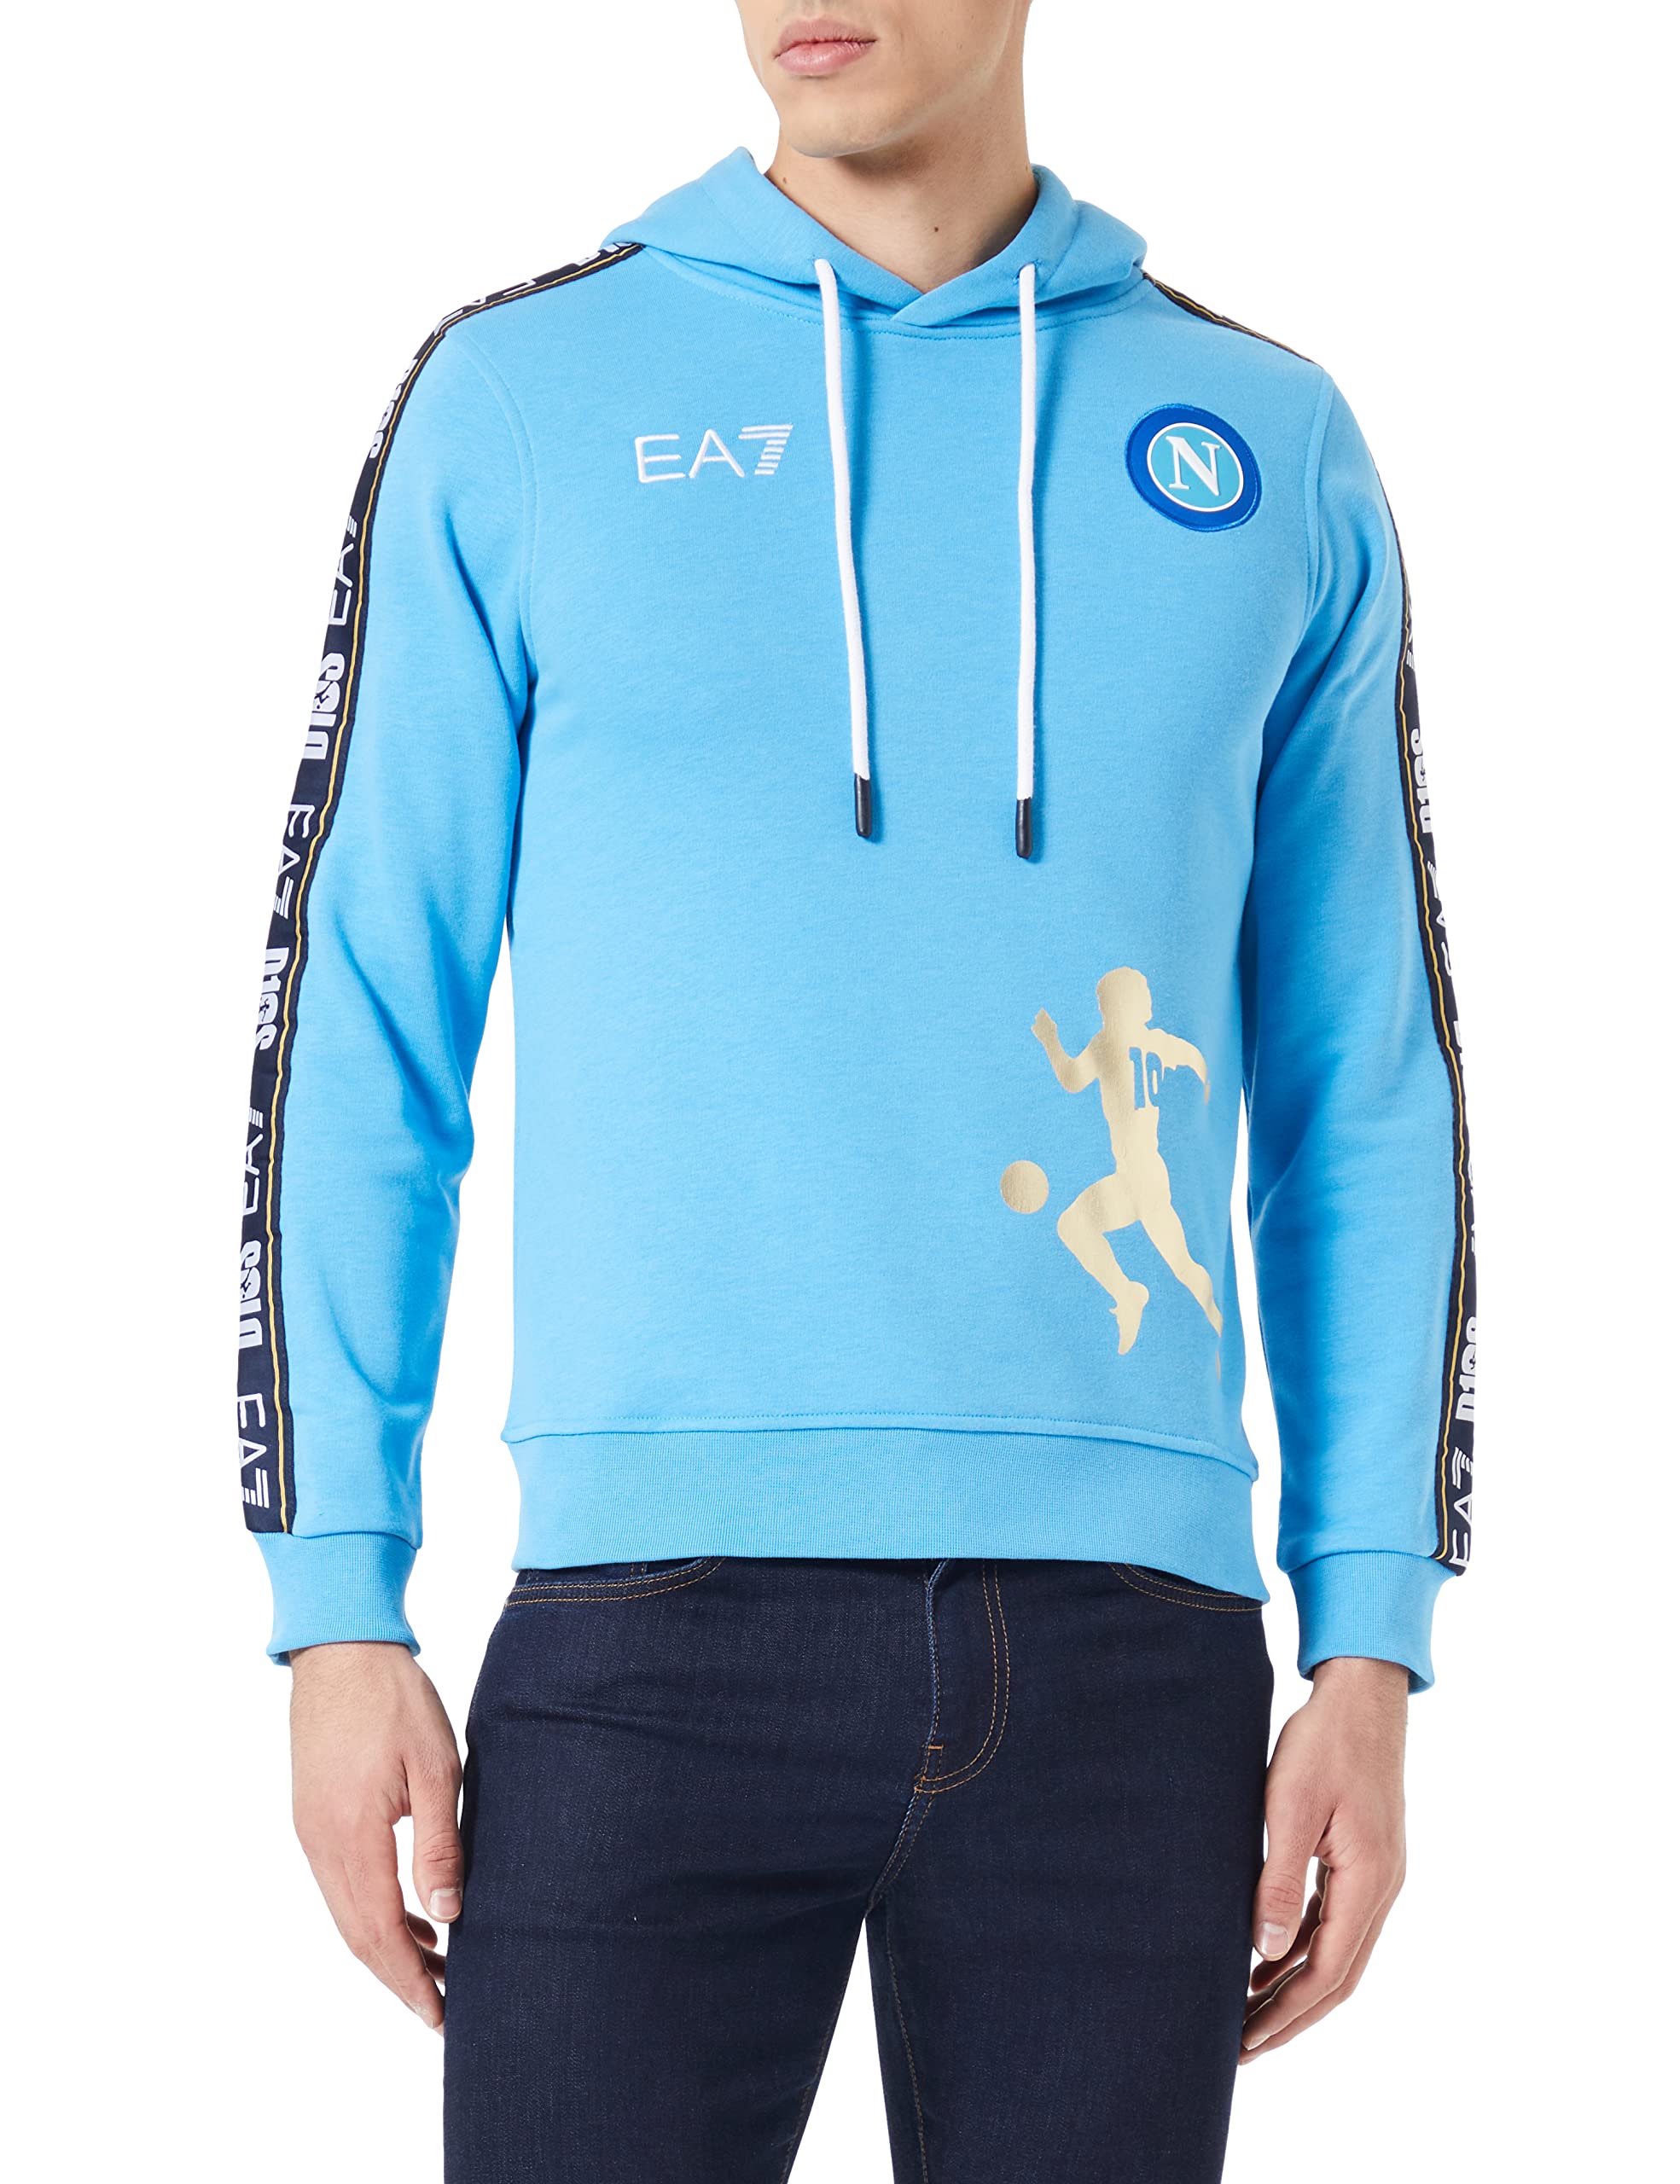 SSC Napoli Herren D10s hellblau Special Edition Sweatshirt, XL